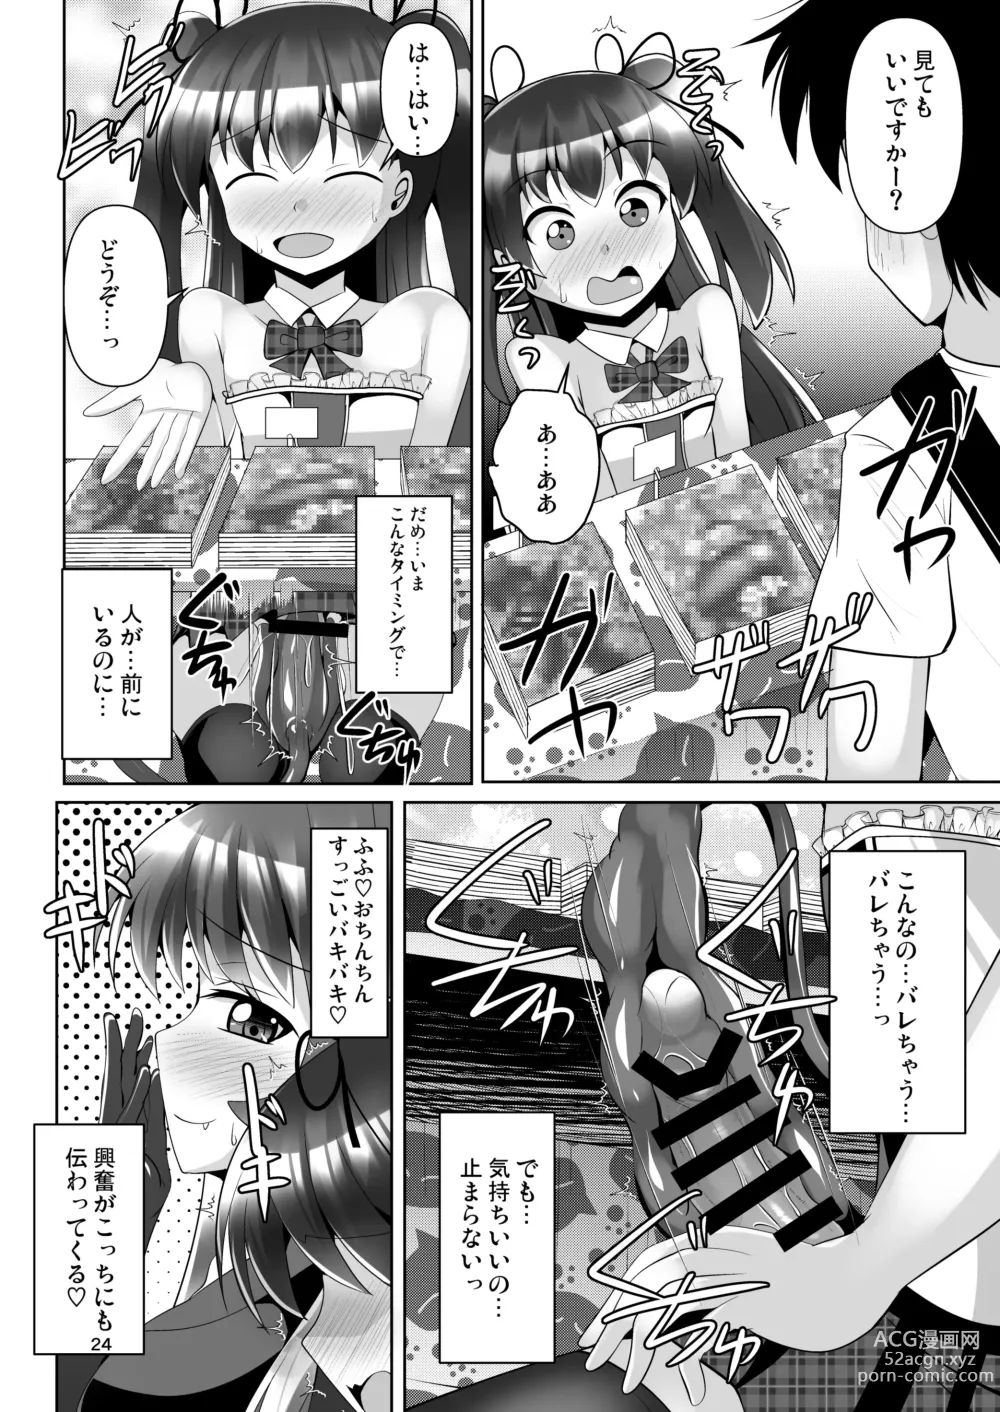 Page 24 of doujinshi Futanari Kuro Tights no Succubus JK ni Oshiri Horaretai! Vol. 7